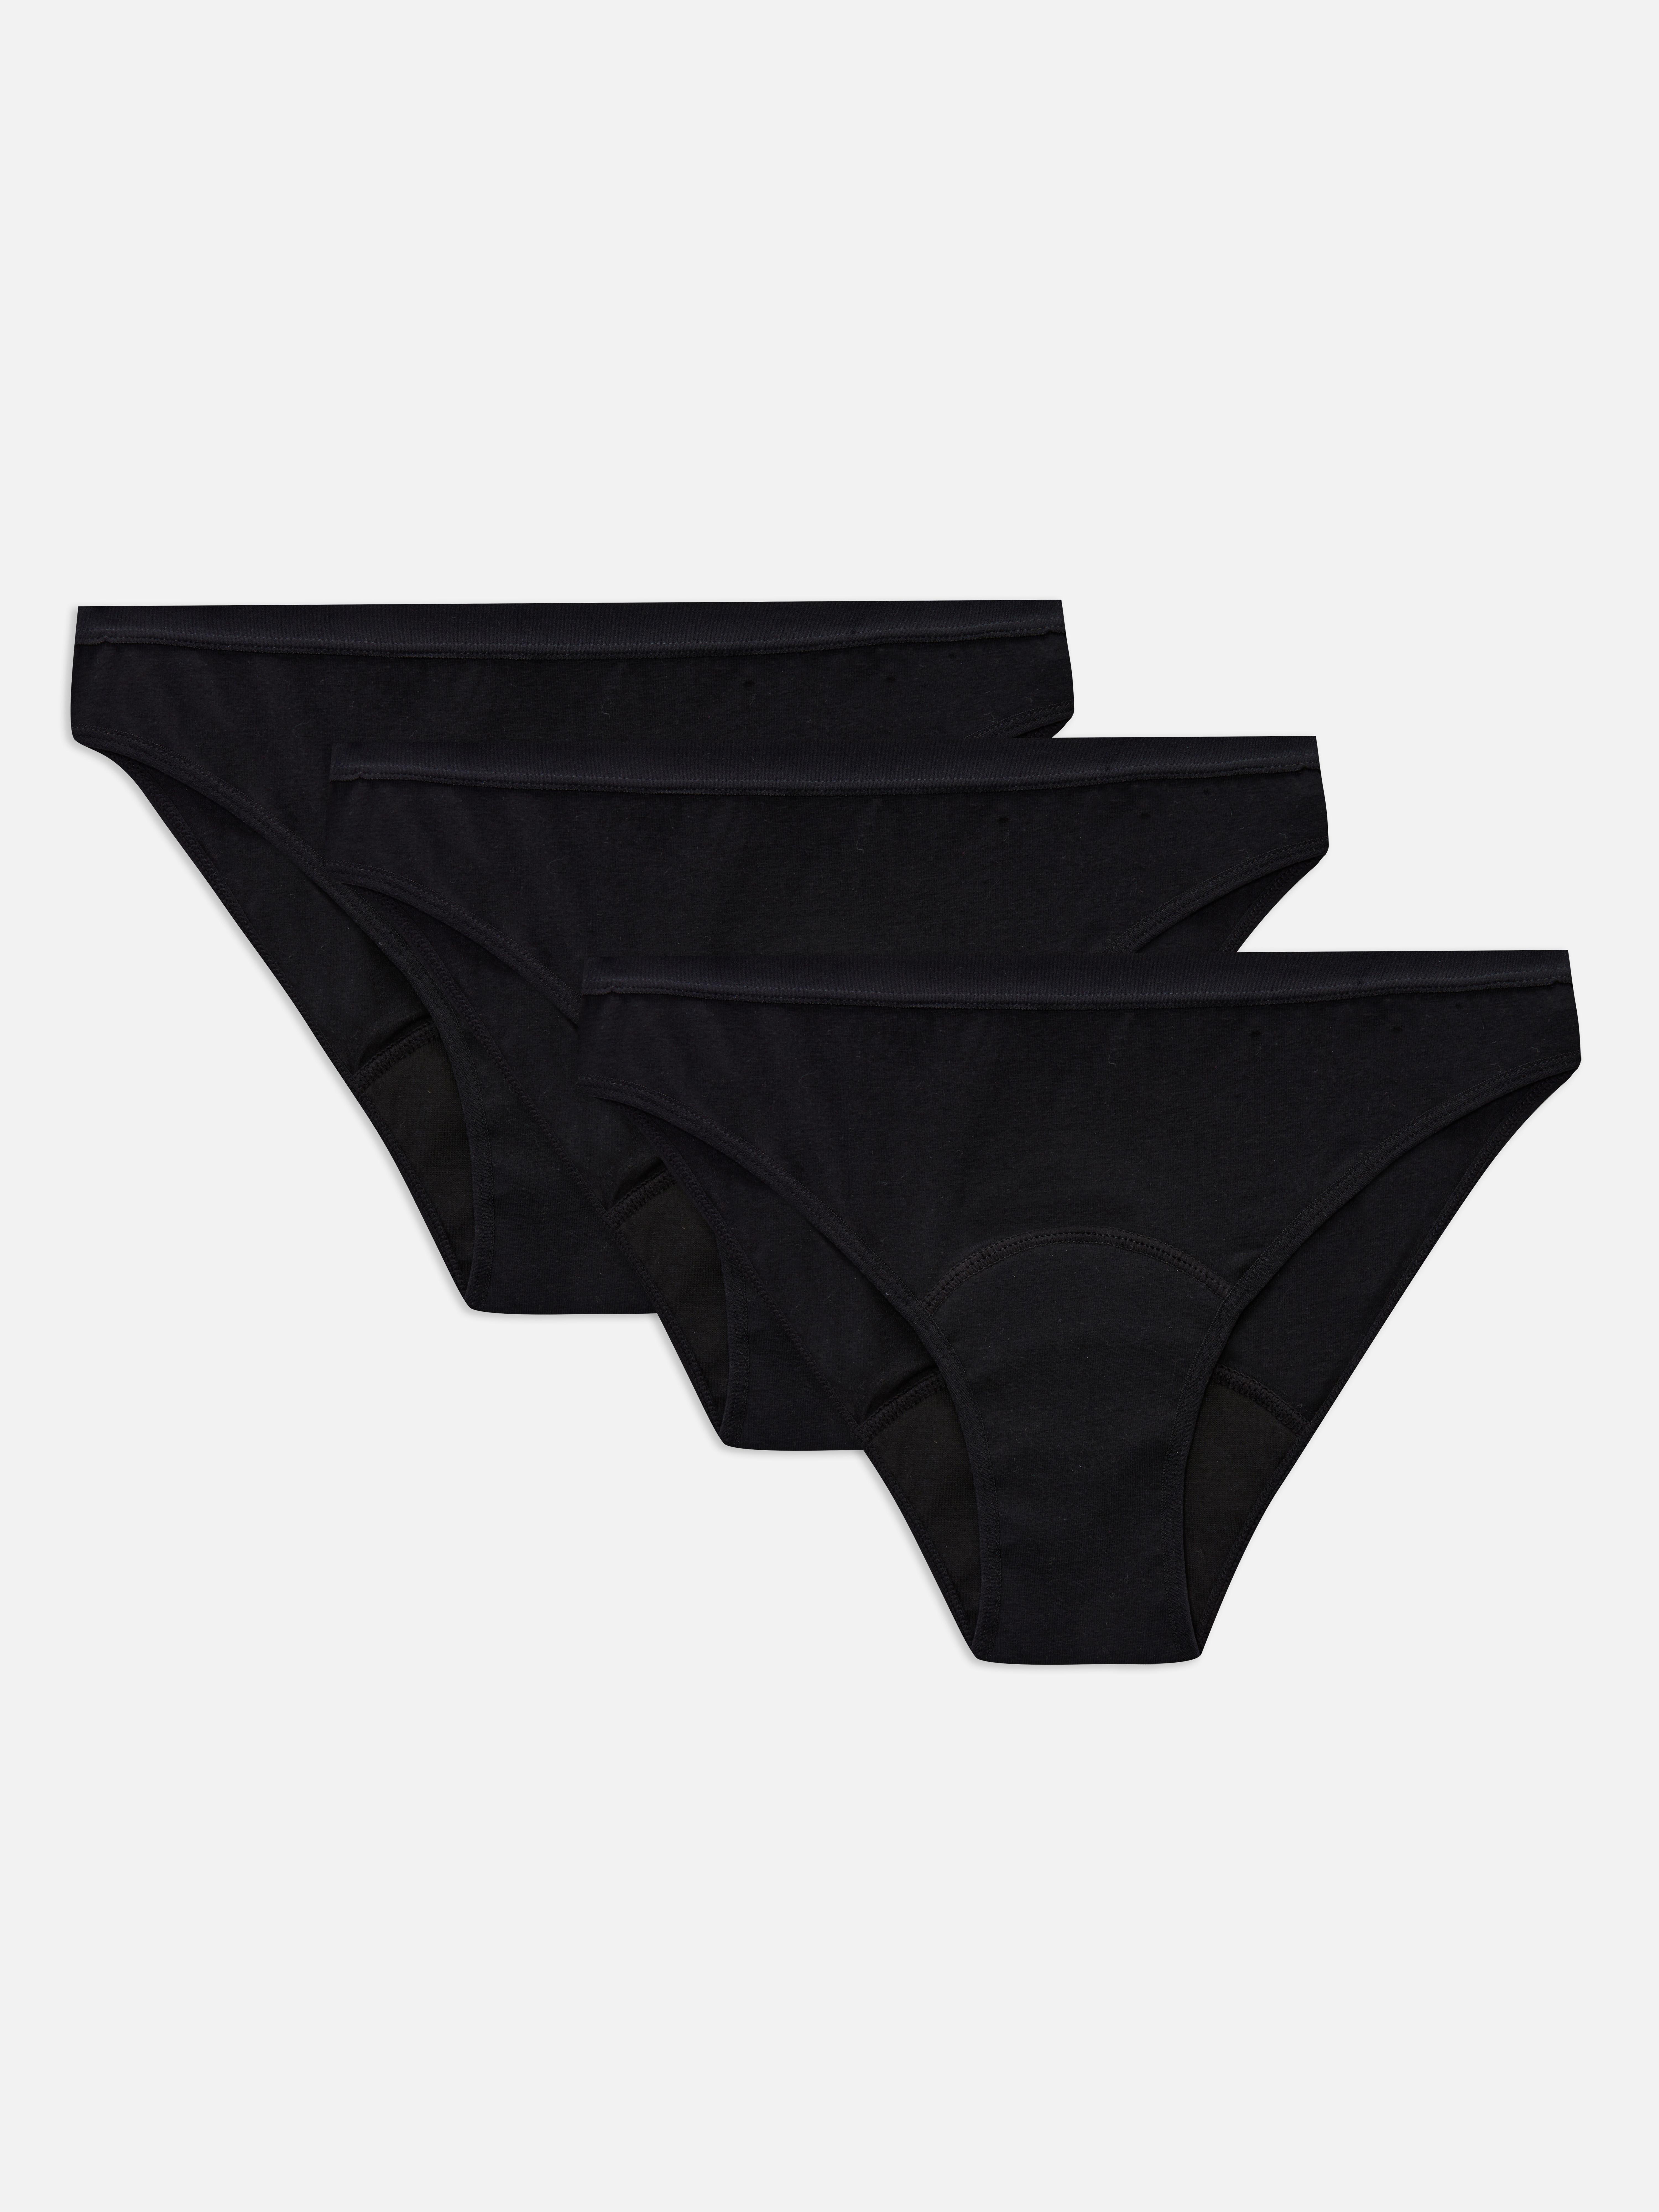 Primark Period Underwear Hipster 3 Pack Brand New Size 12-14